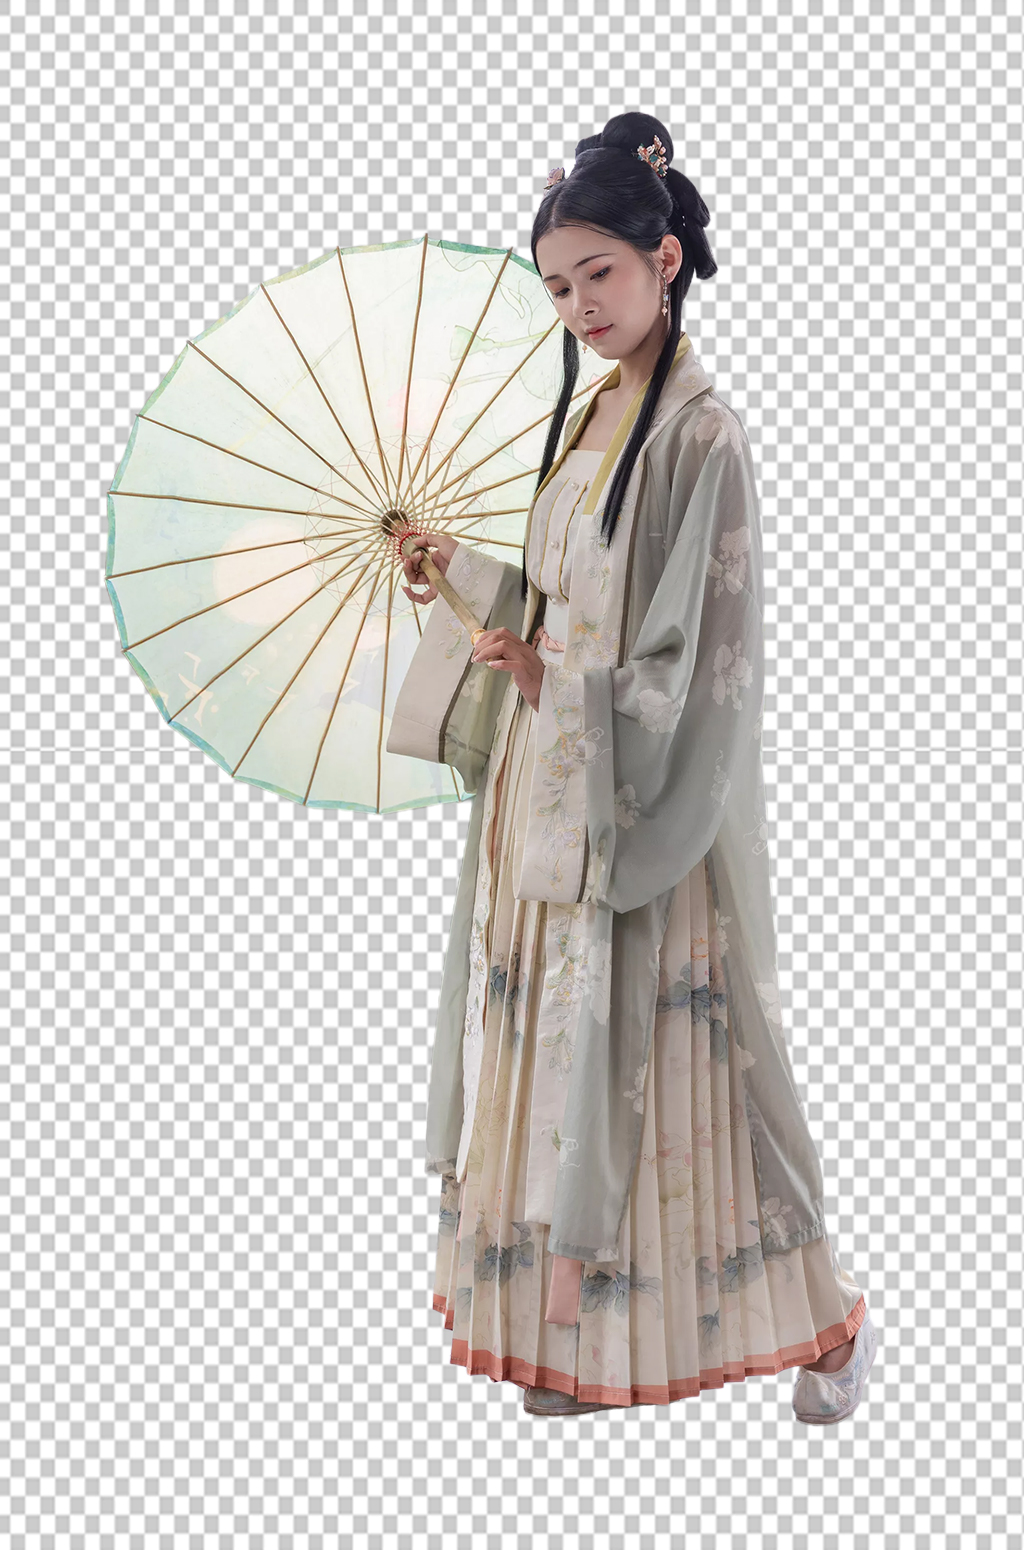 汉服女性人物打油纸伞免抠png摄影图